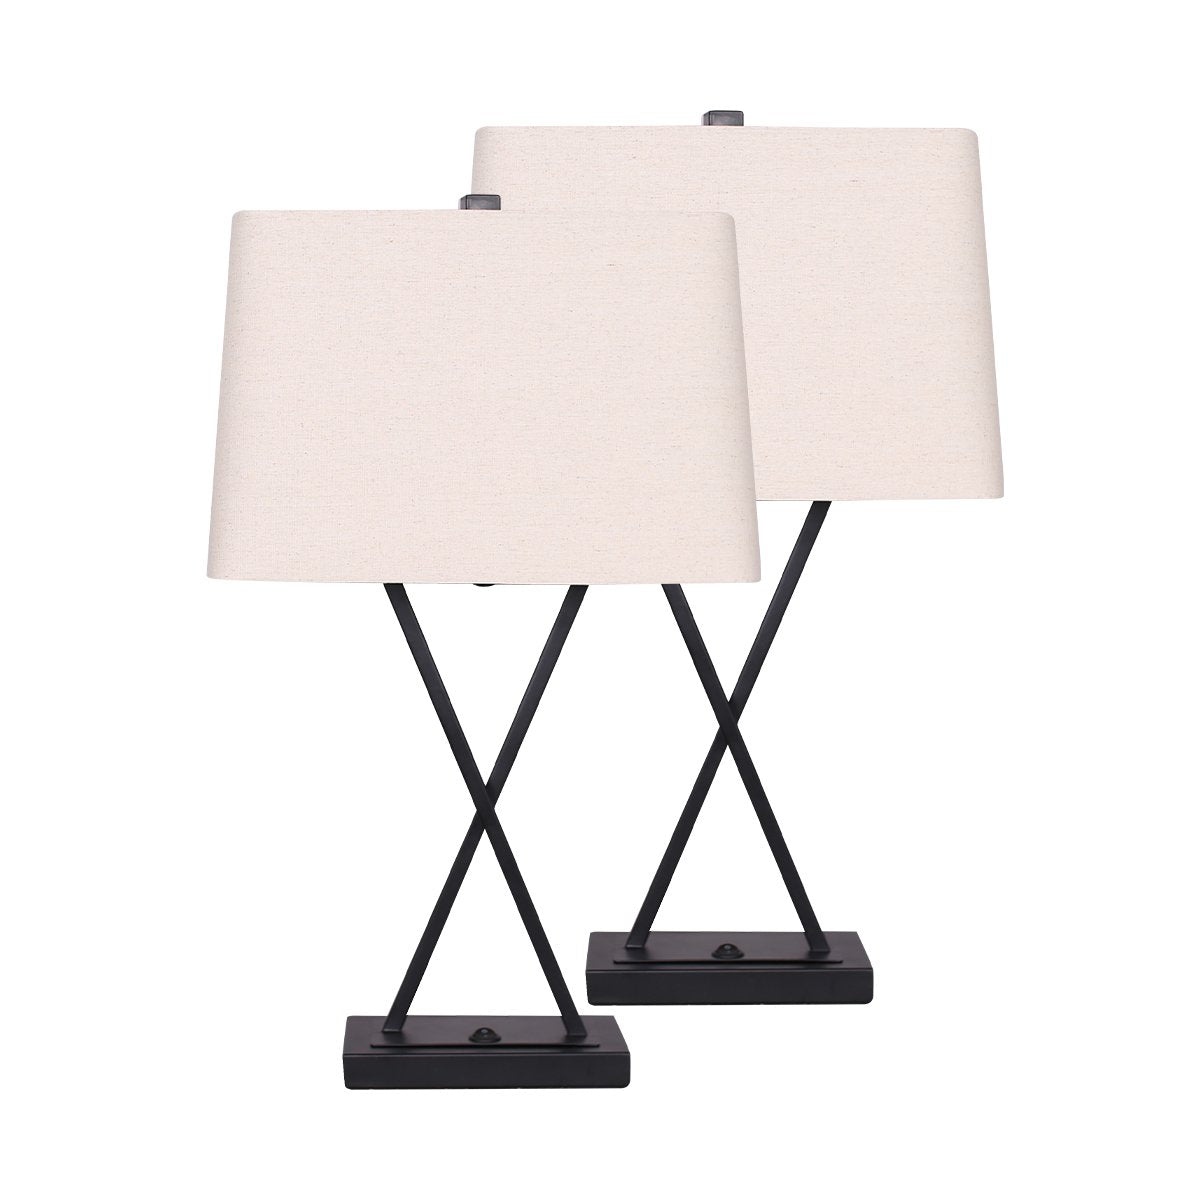 Sarantino Metal Table Lamp Pair Rectangular Shade X Stand